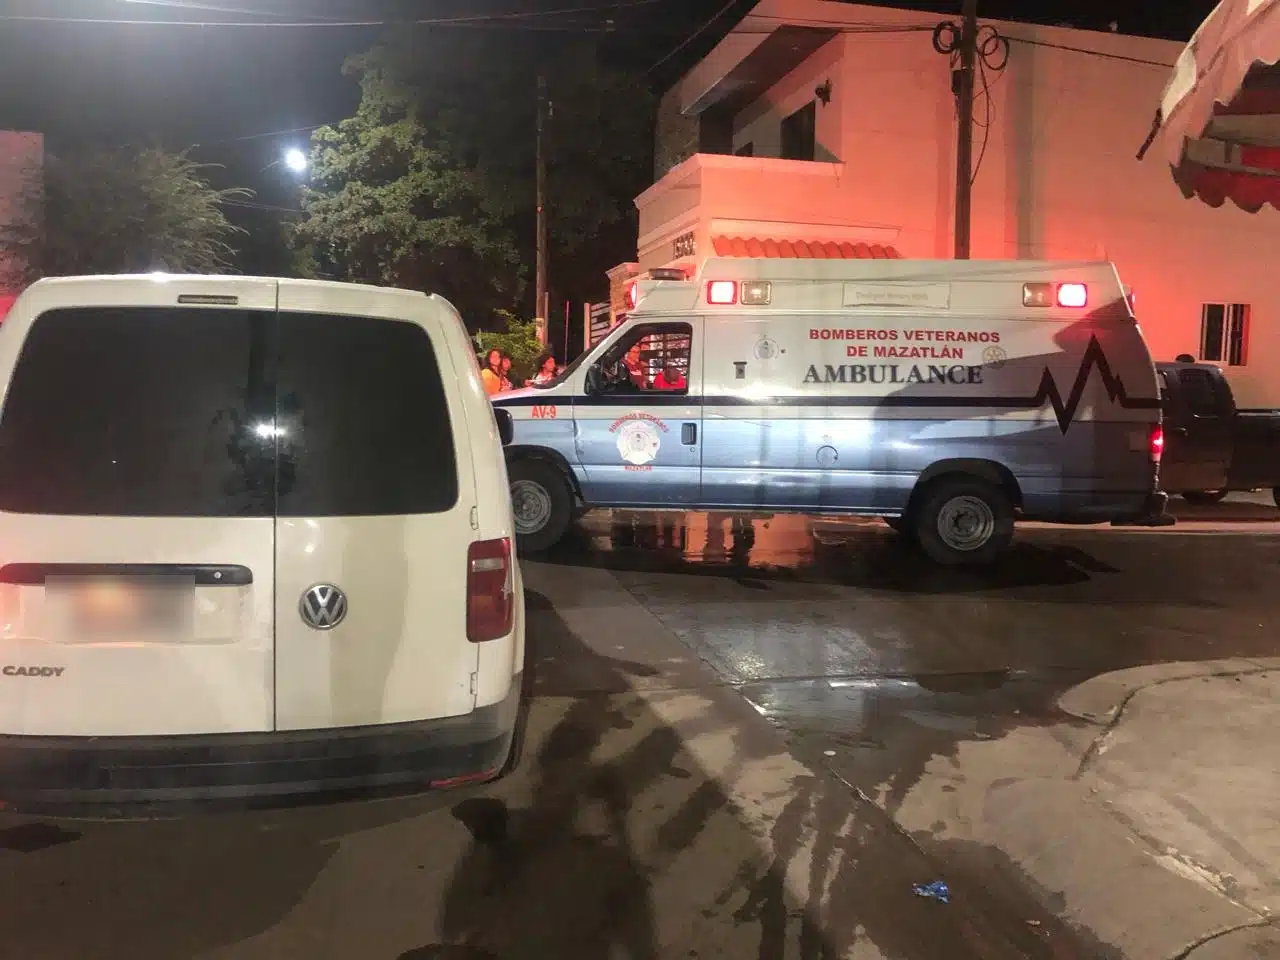 Camioneta de reparto en el lugar de los hechos. También está una ambulancia de Bomberos Veteranos Mazatlán